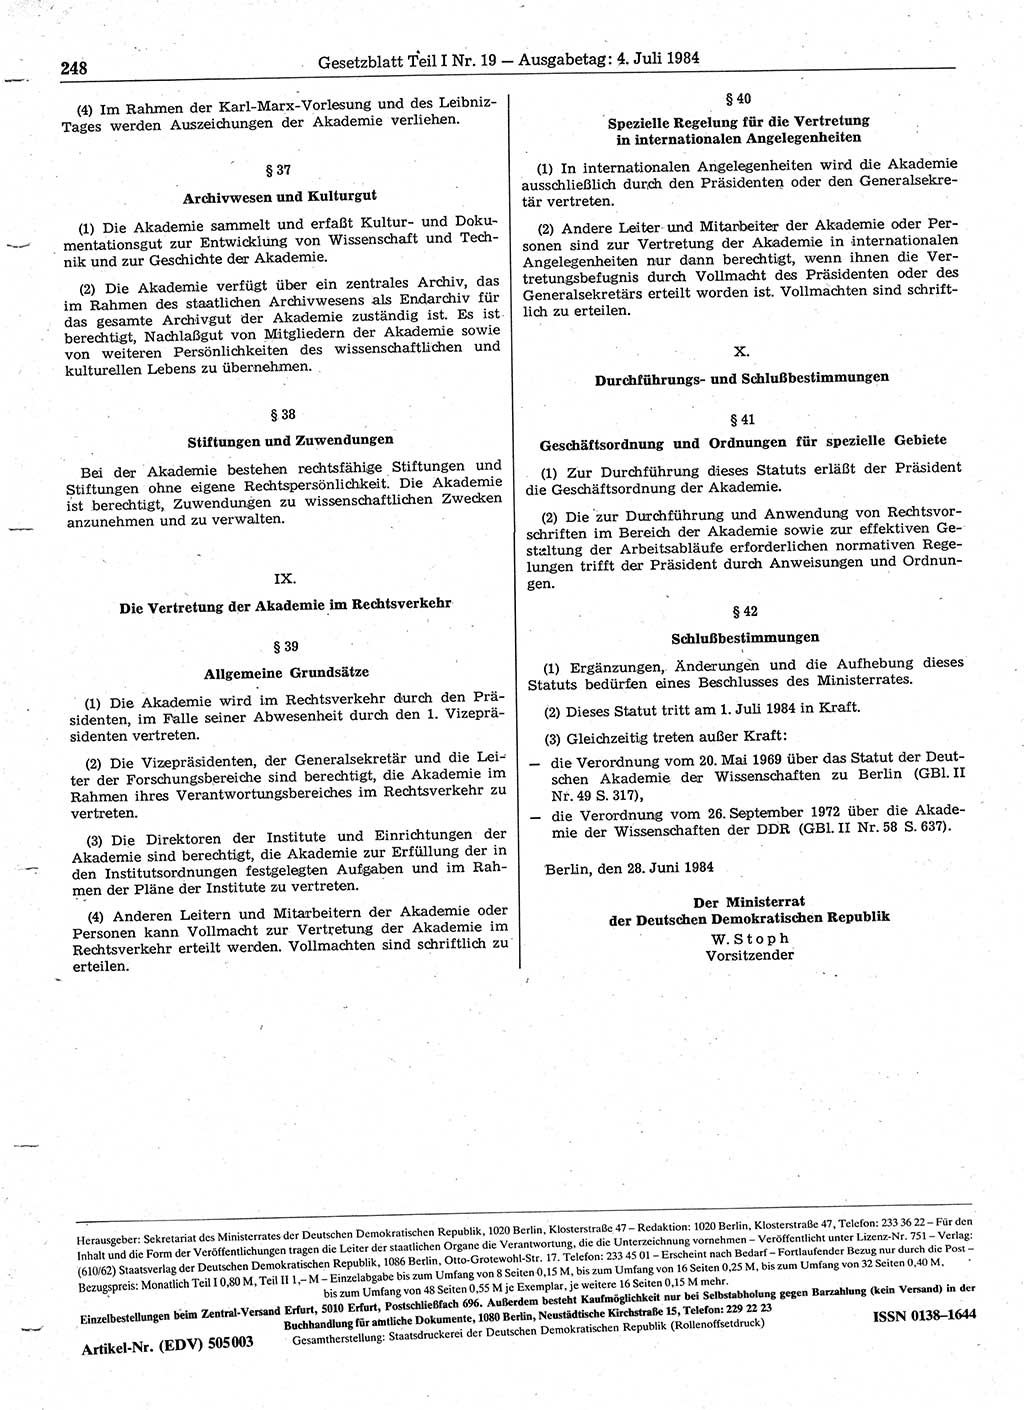 Gesetzblatt (GBl.) der Deutschen Demokratischen Republik (DDR) Teil Ⅰ 1984, Seite 248 (GBl. DDR Ⅰ 1984, S. 248)